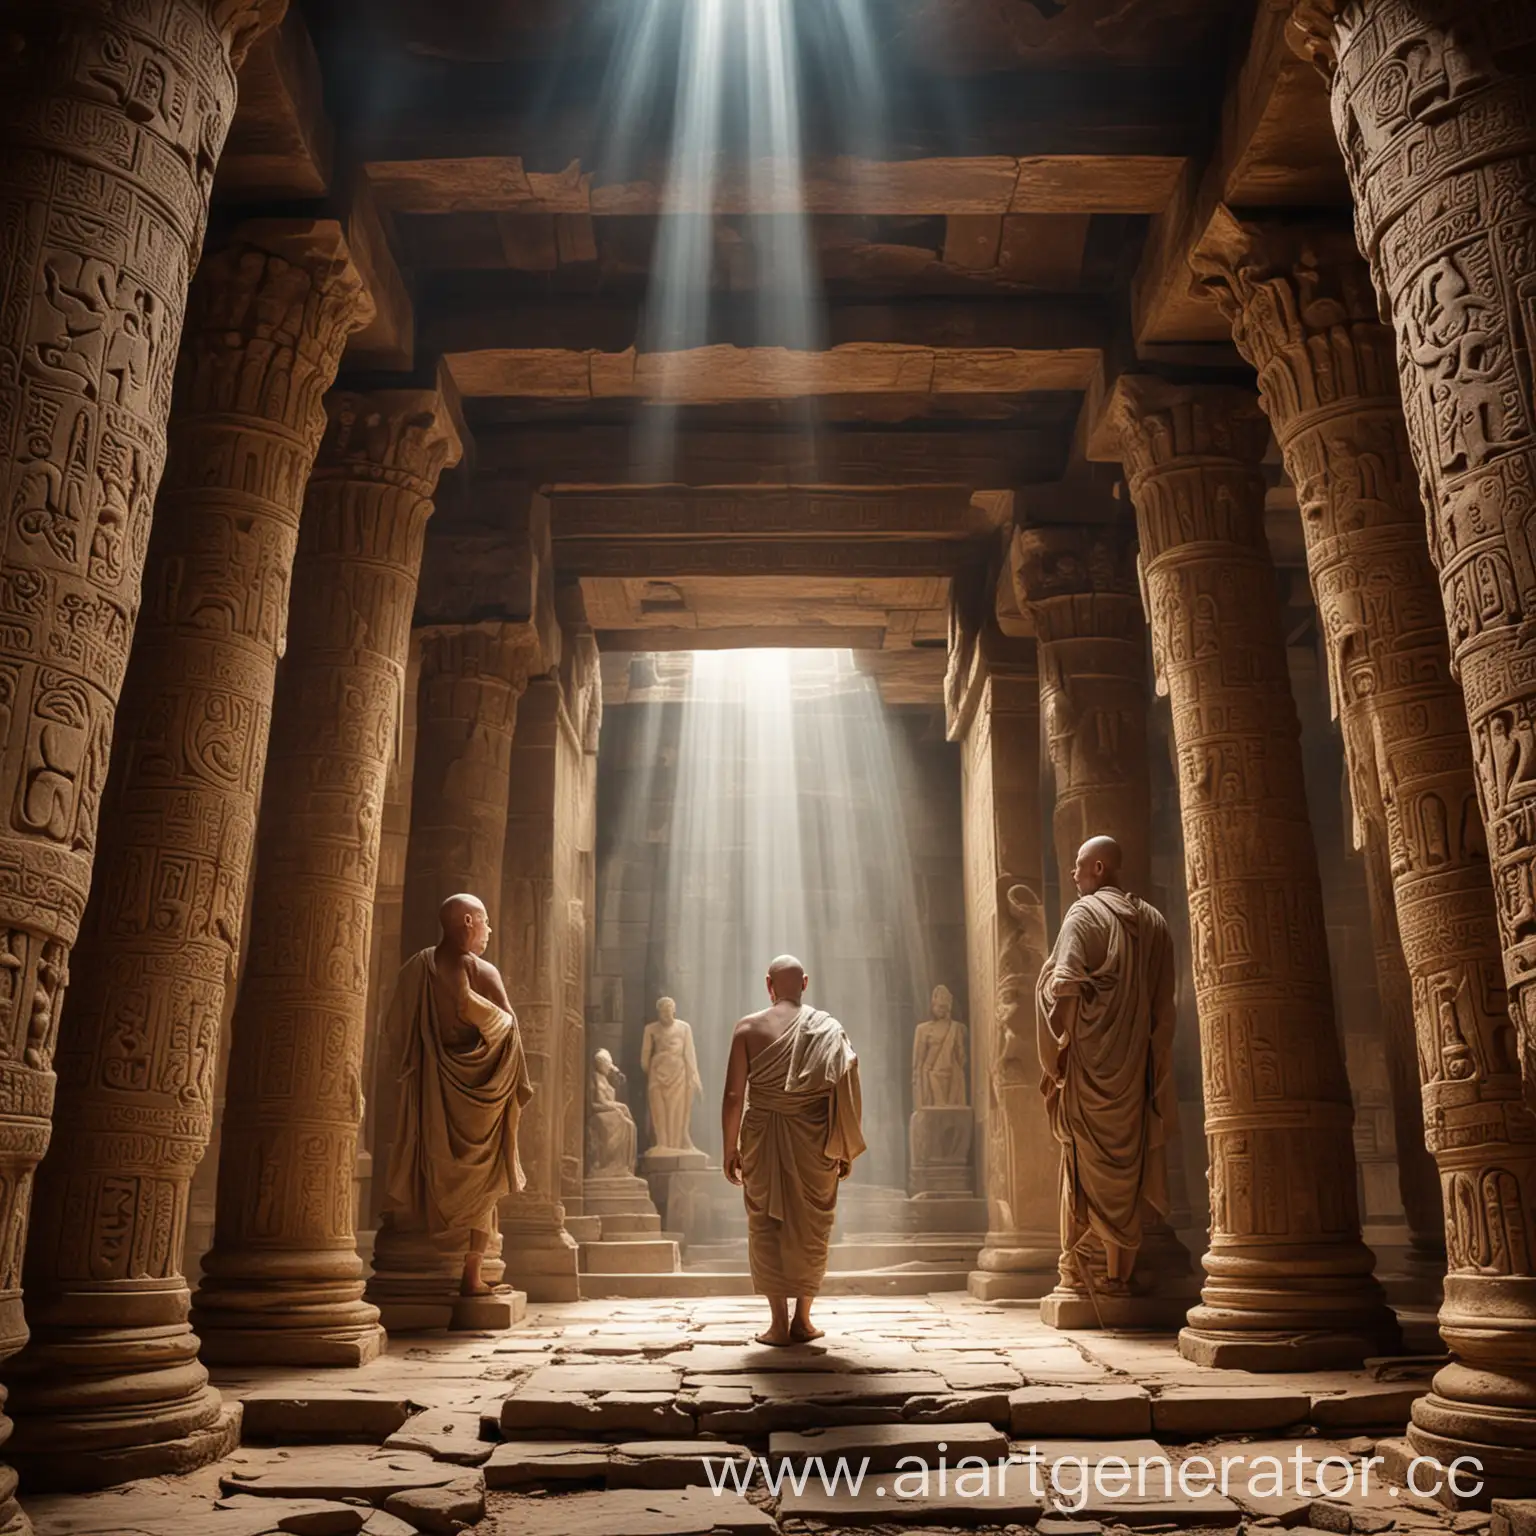 Древний храм  с бритоголовыми монахами - одетыми в тоги - лучи света - вокруг змеи и изображения бога Сета 
